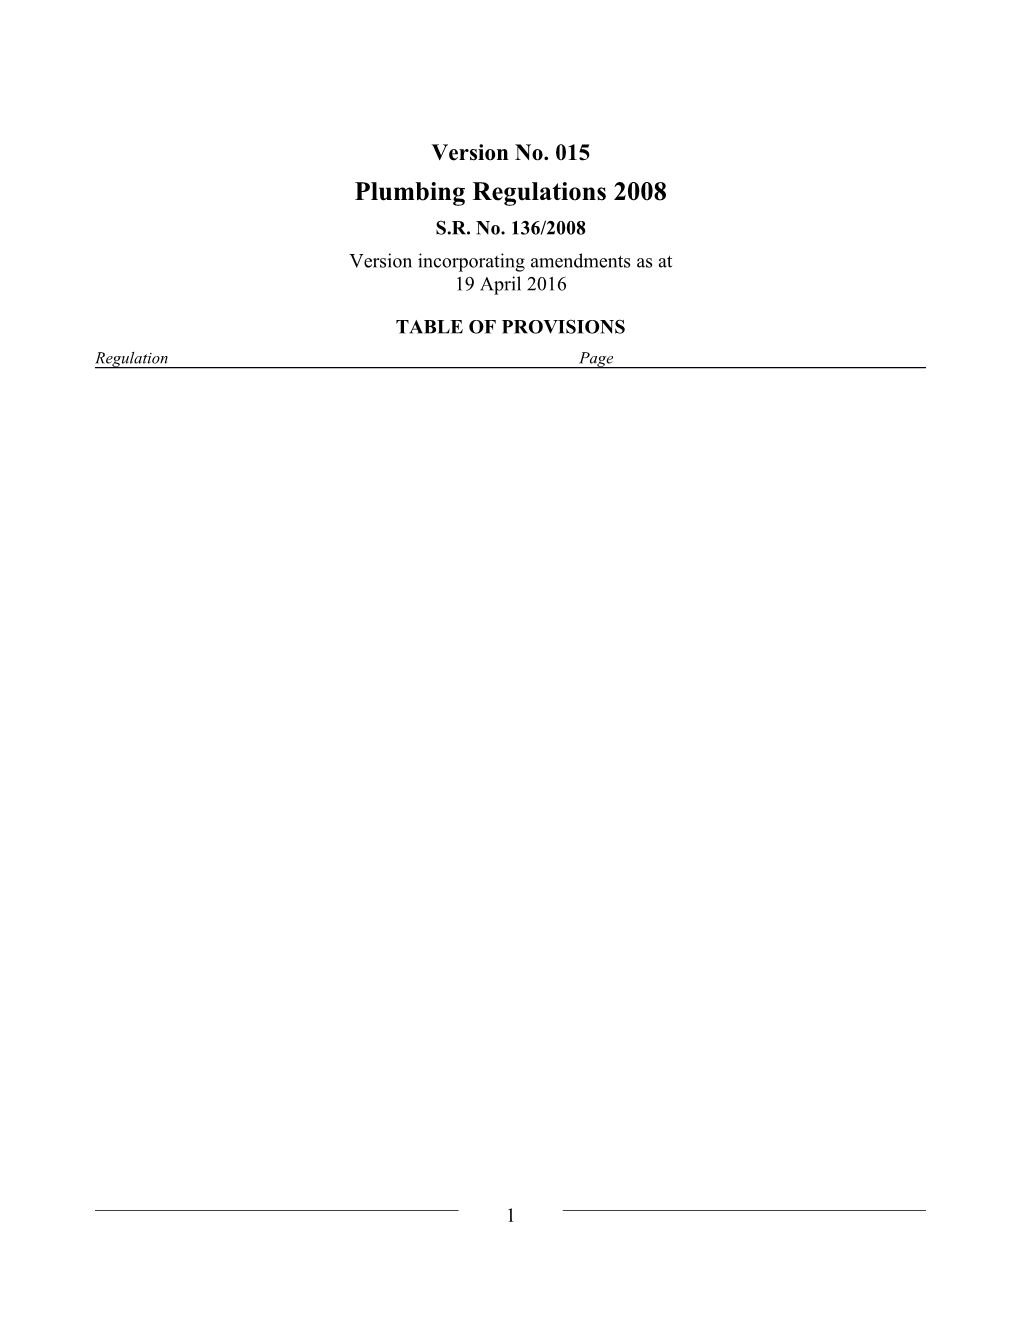 Plumbing Regulations 2008